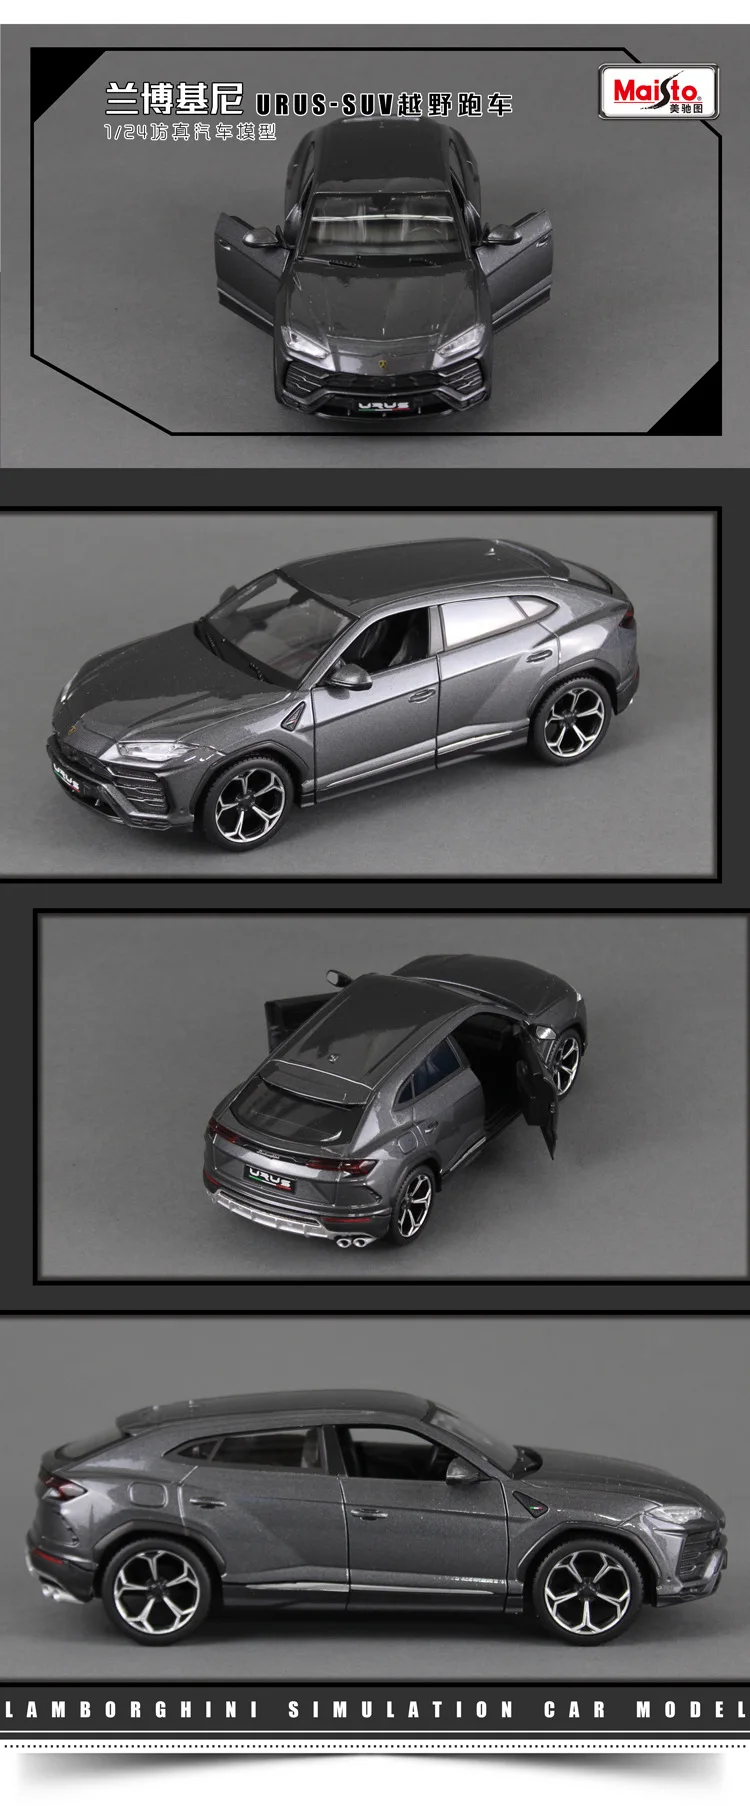 Bburago 1:24 Lamborghini hurricane alloy модель автомобиля Моделирование Украшение автомобиля коллекция Подарочная игрушка